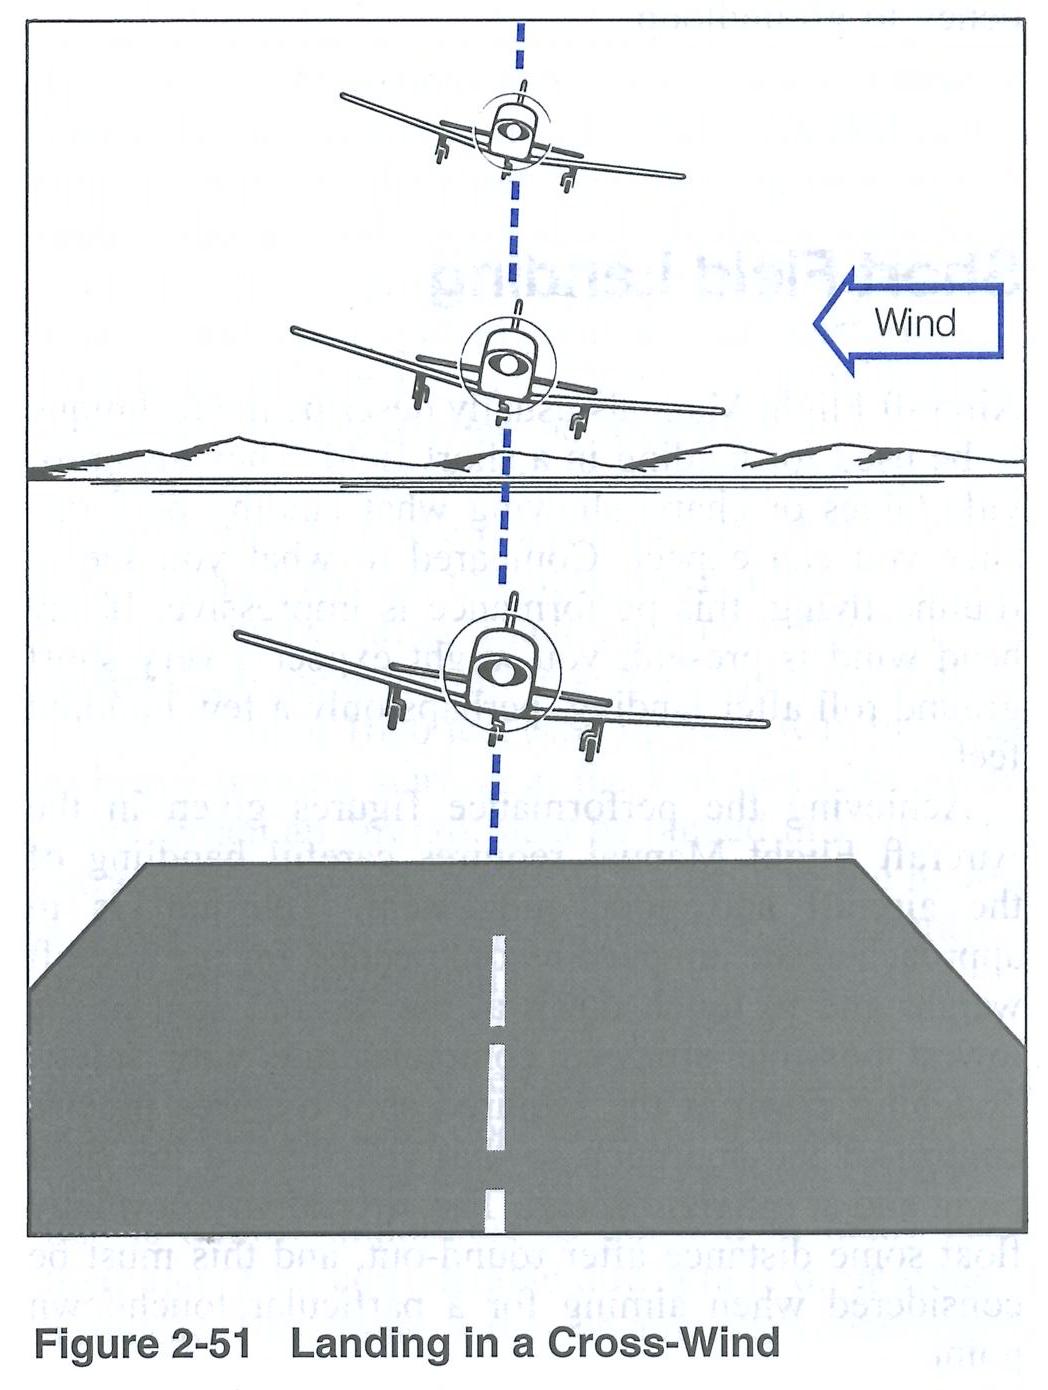 Transport Canada's Flight Training Manual.